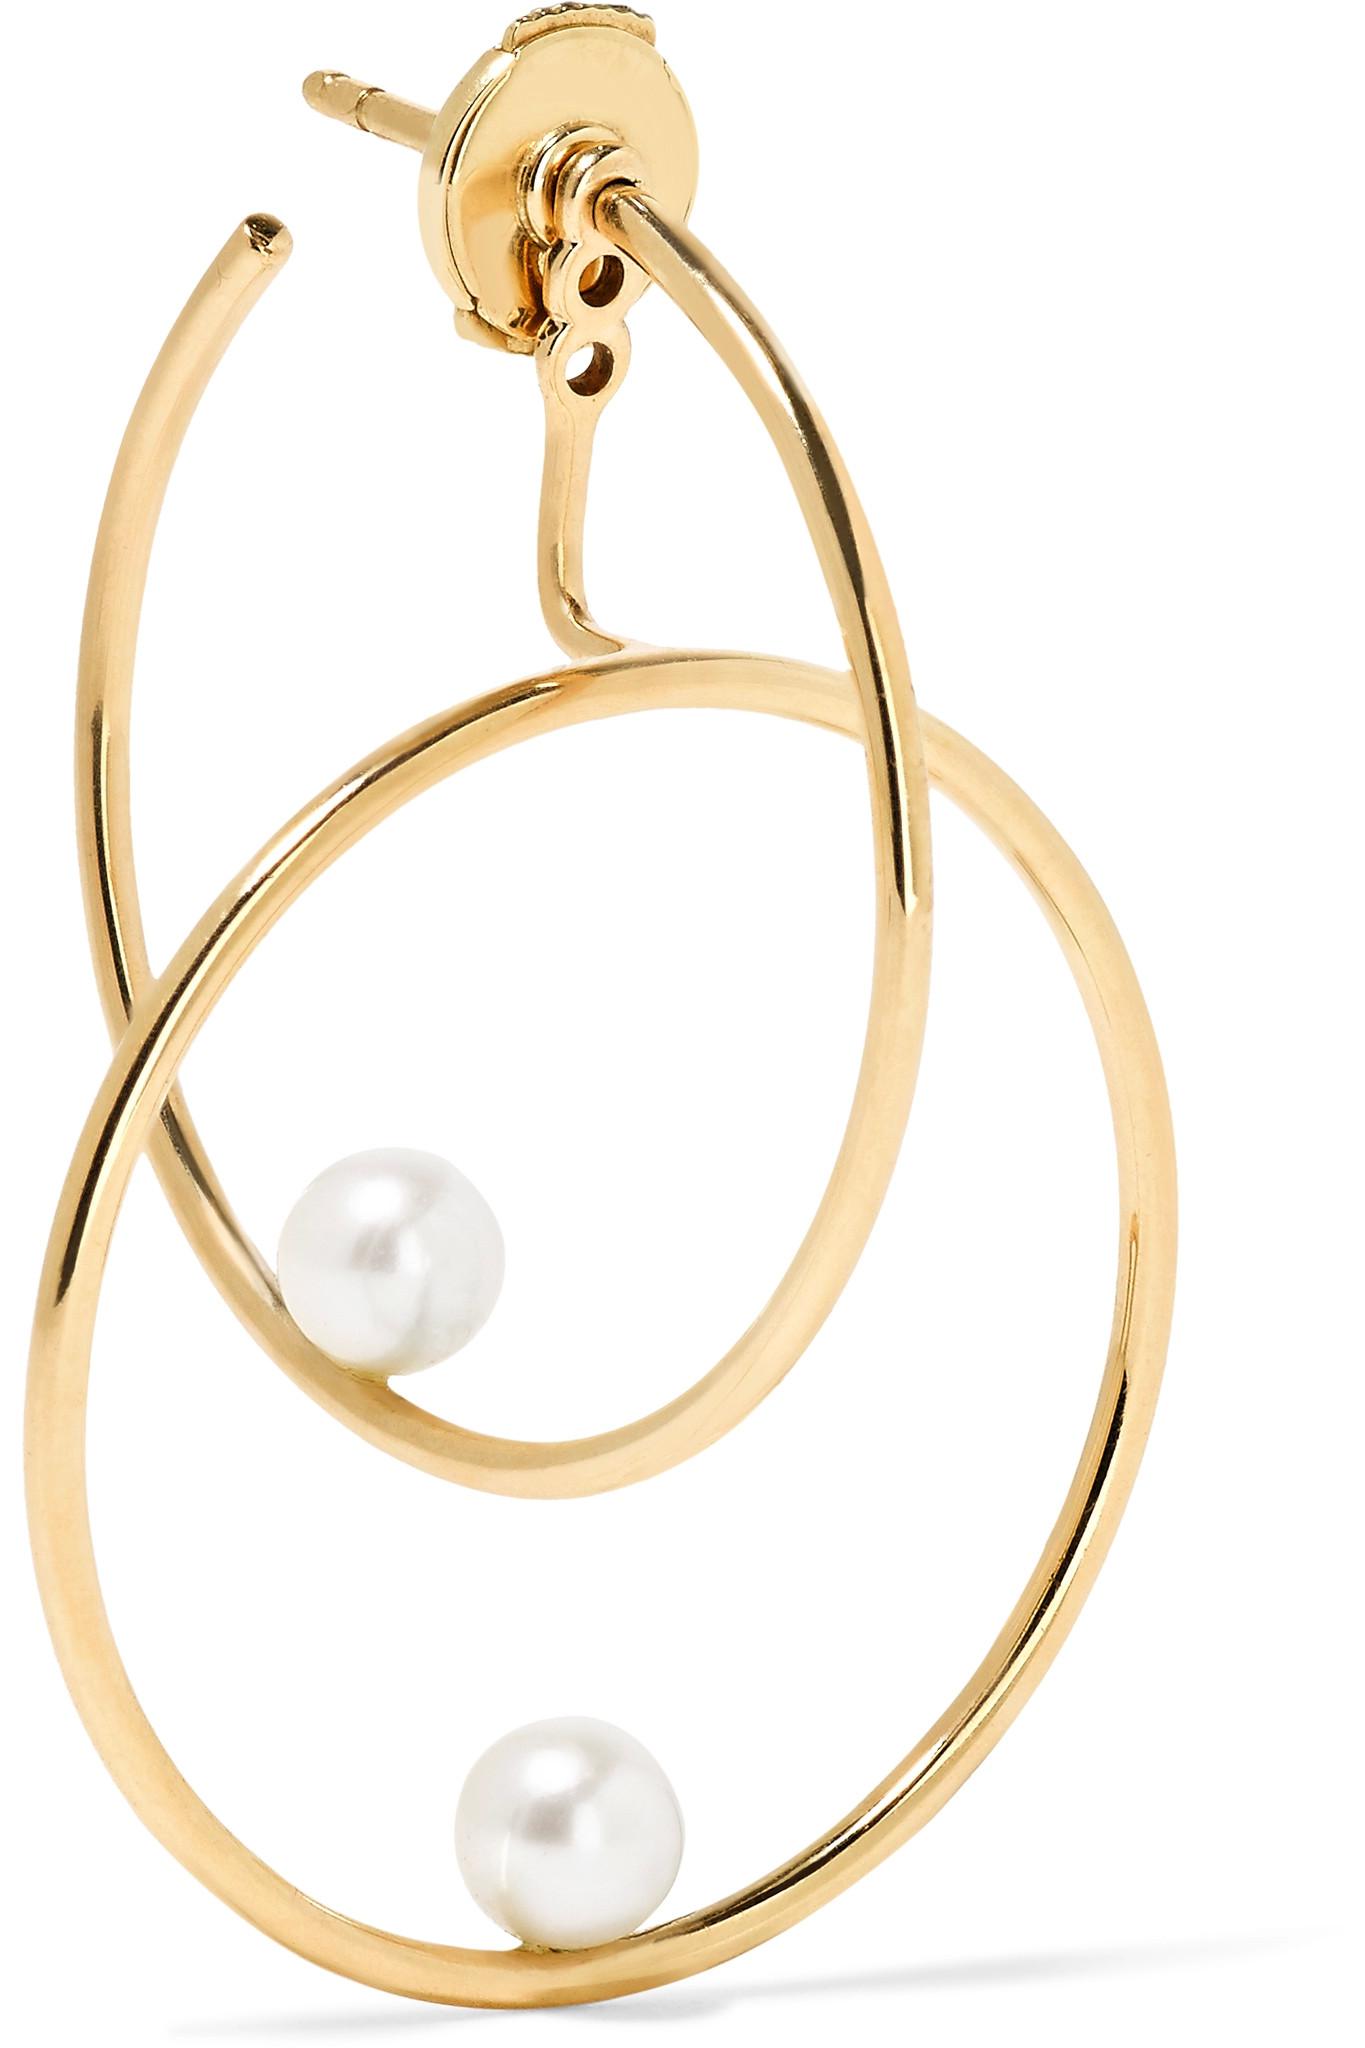 Lyst - Anissa kermiche 14-karat Gold Pearl Hoop Earring in Metallic